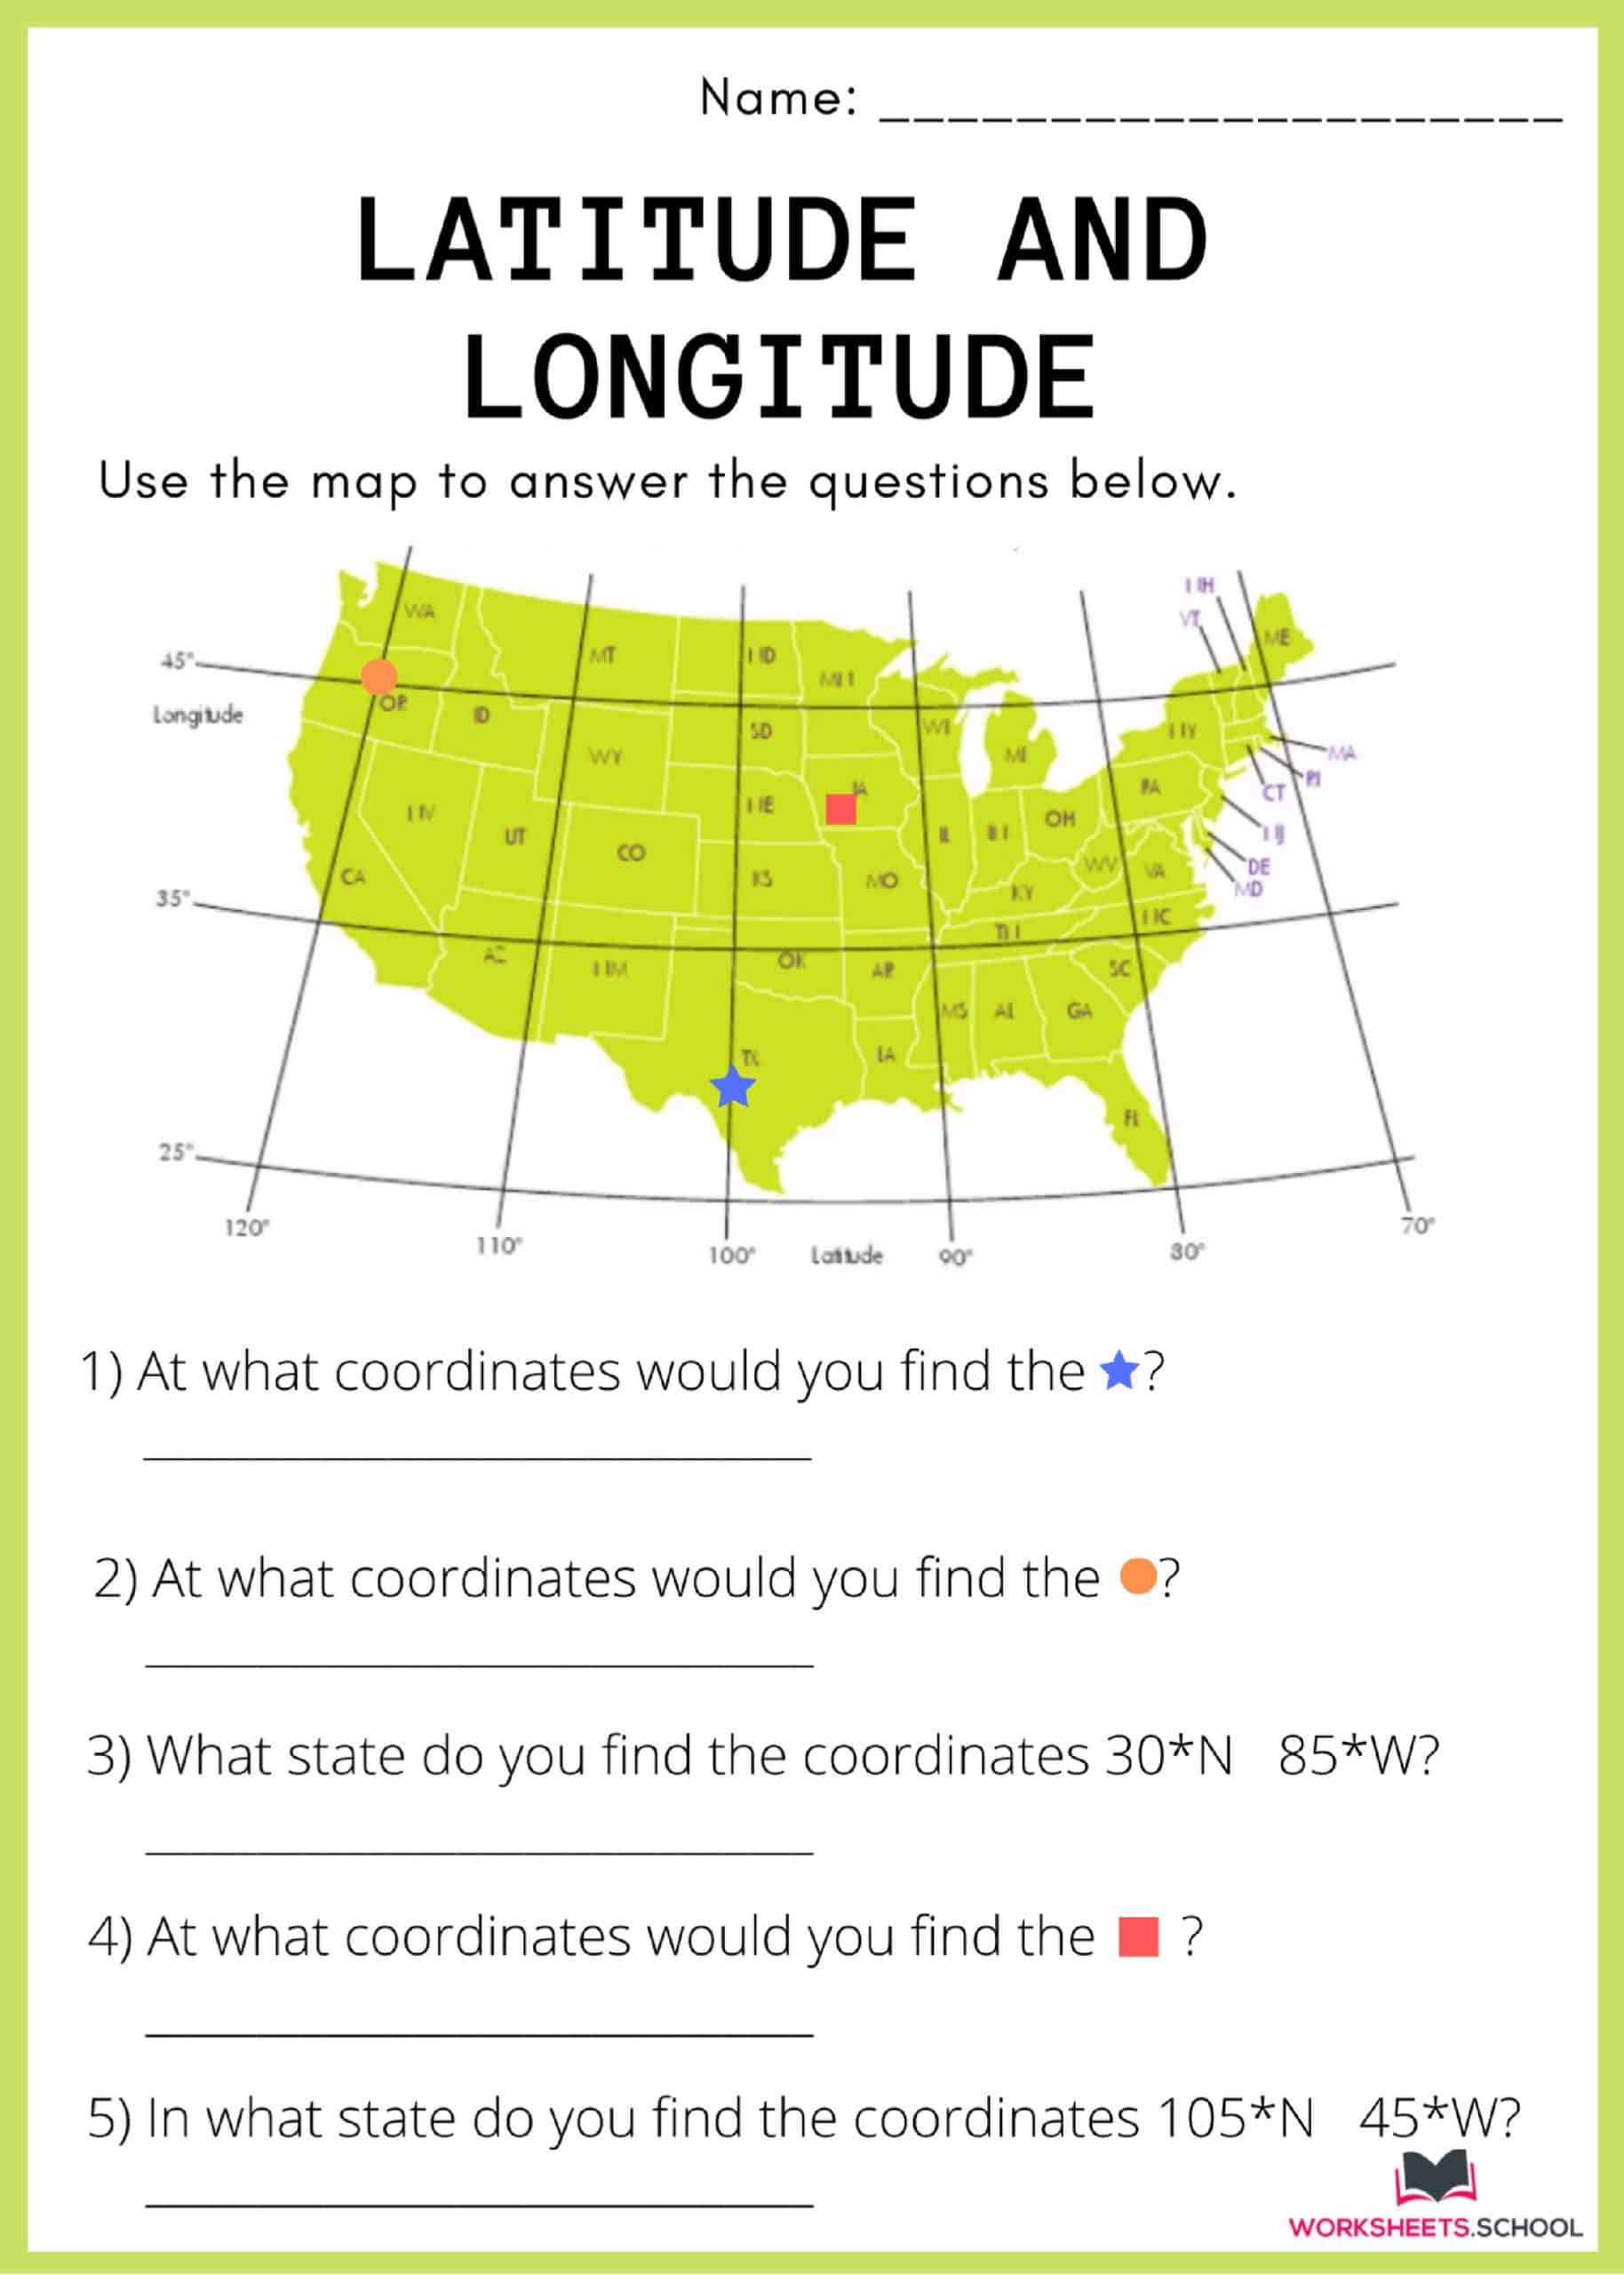 Latitude and Longitude Worksheet - Using the Map 3